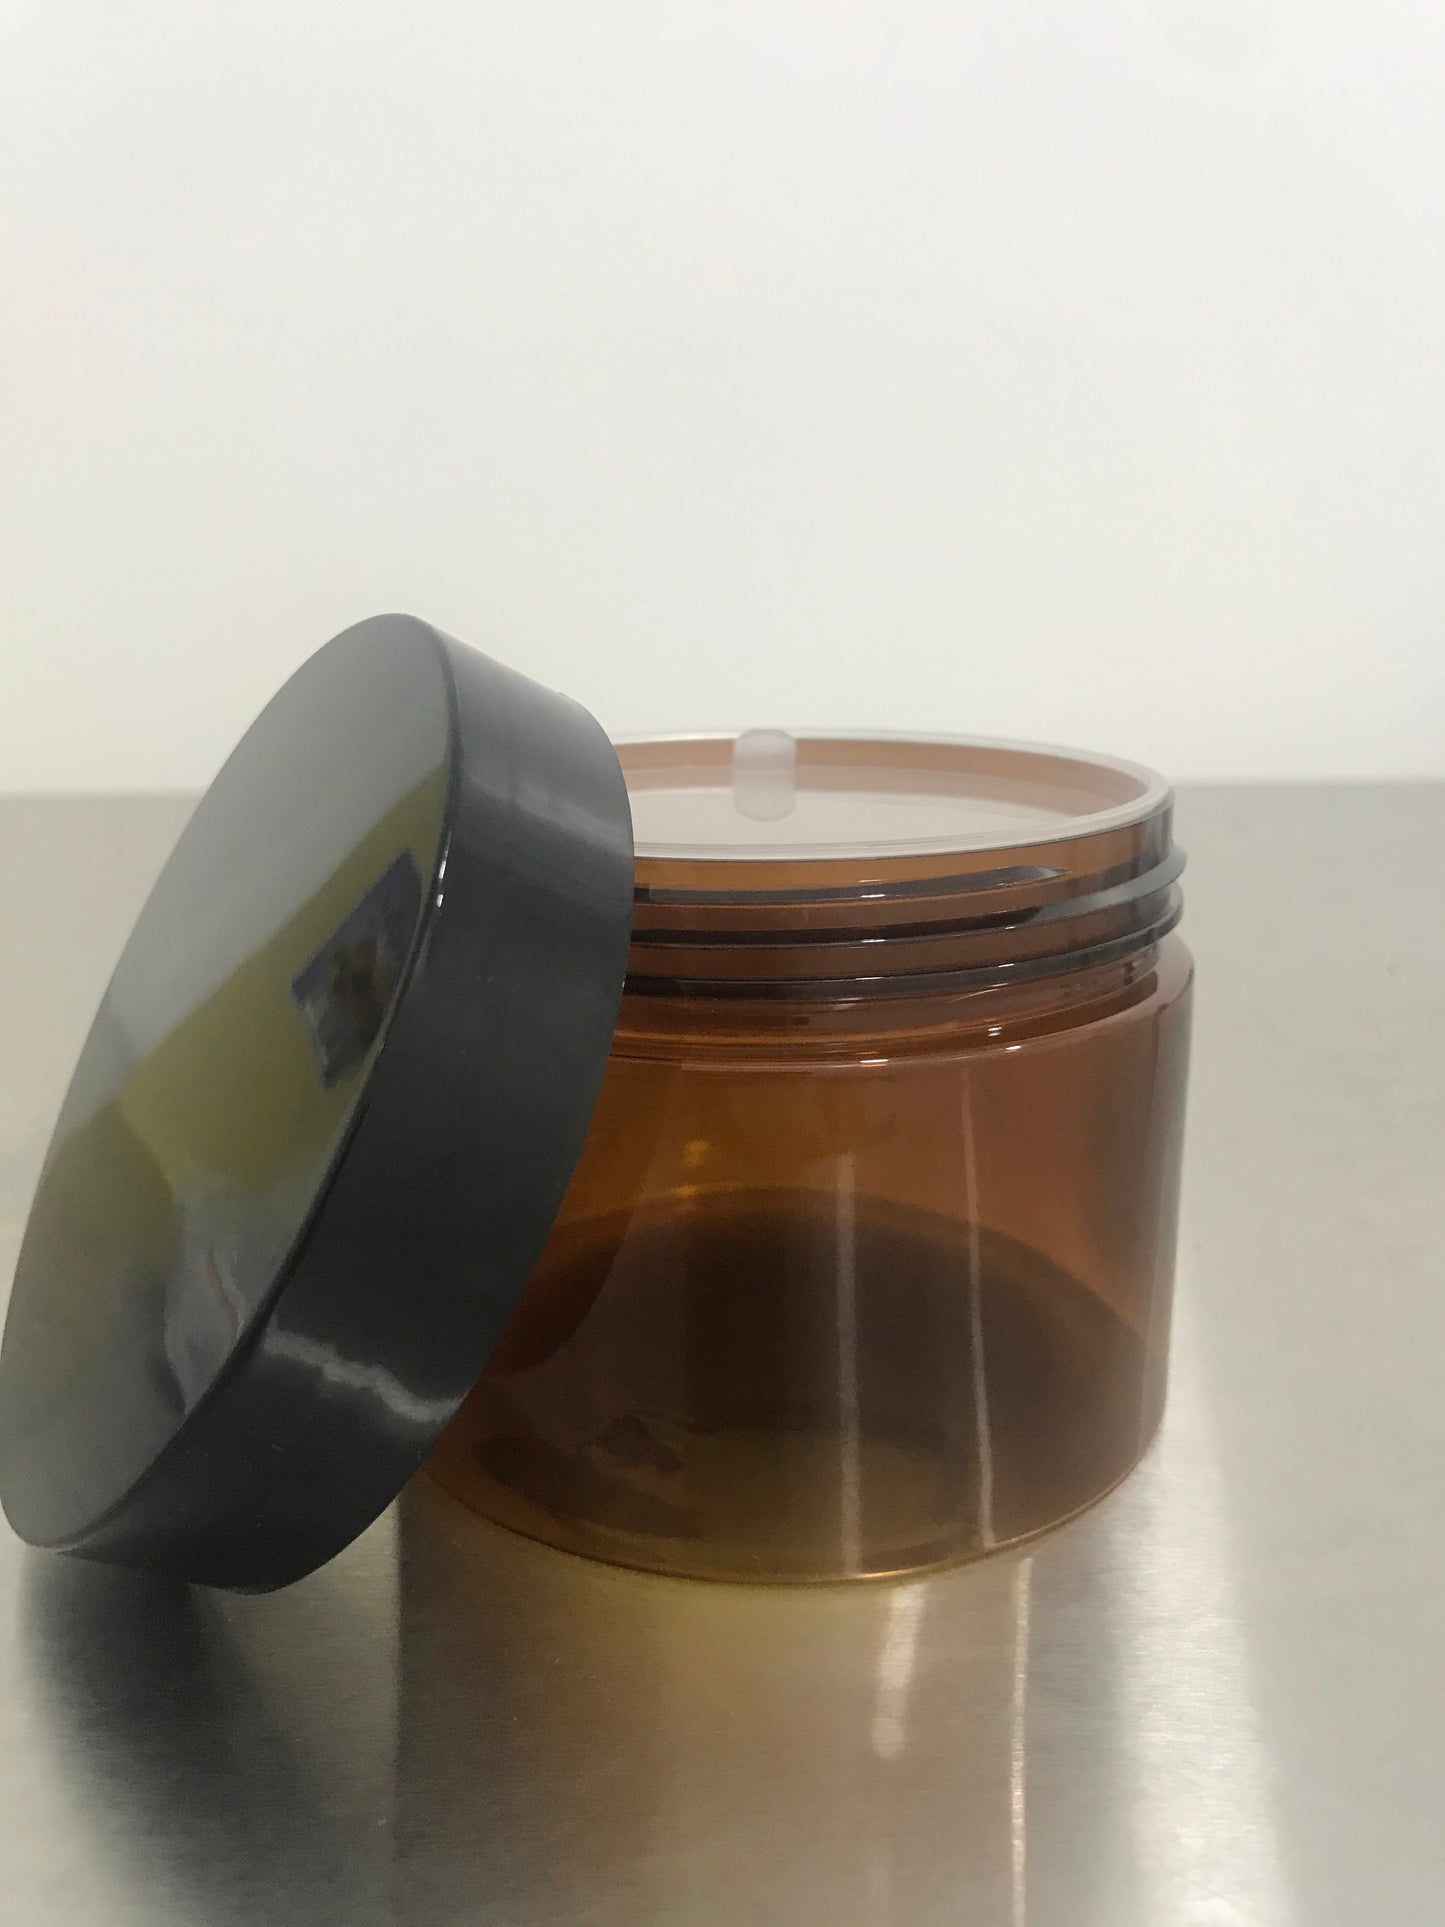 300g Plastic Amber Jar Plastic Black Cap